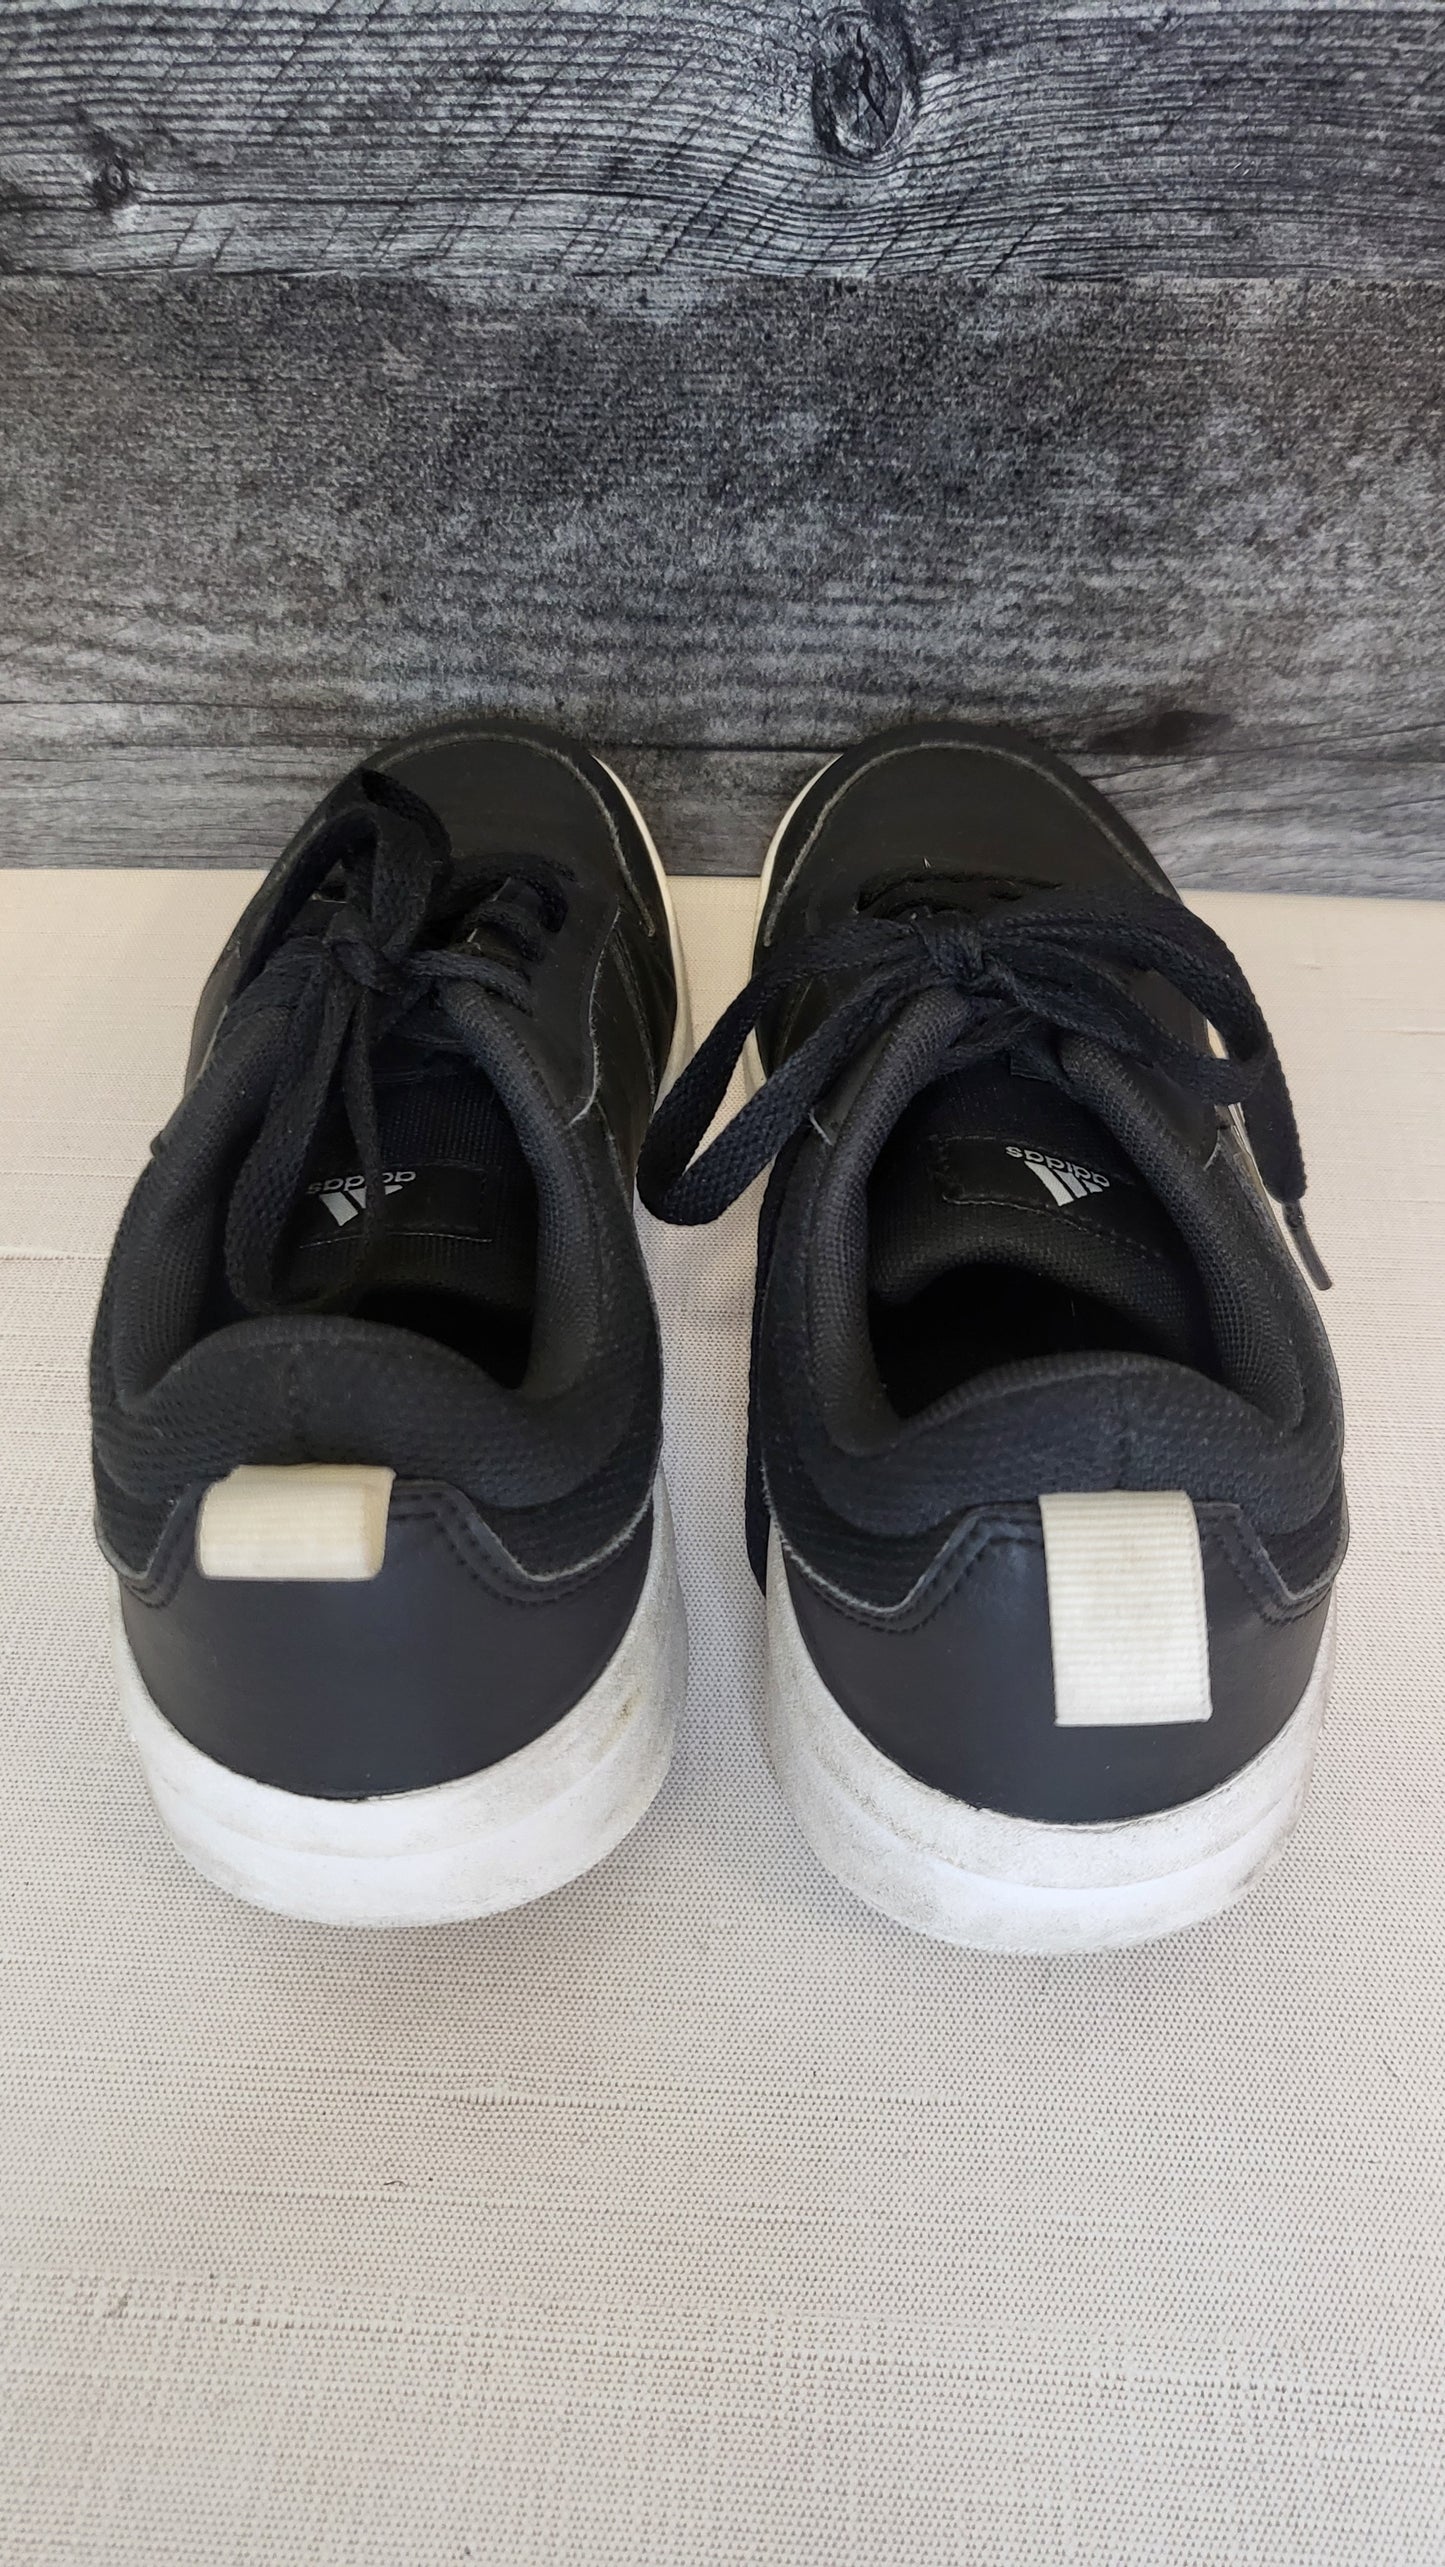 Adidas Black Sneakers (37)